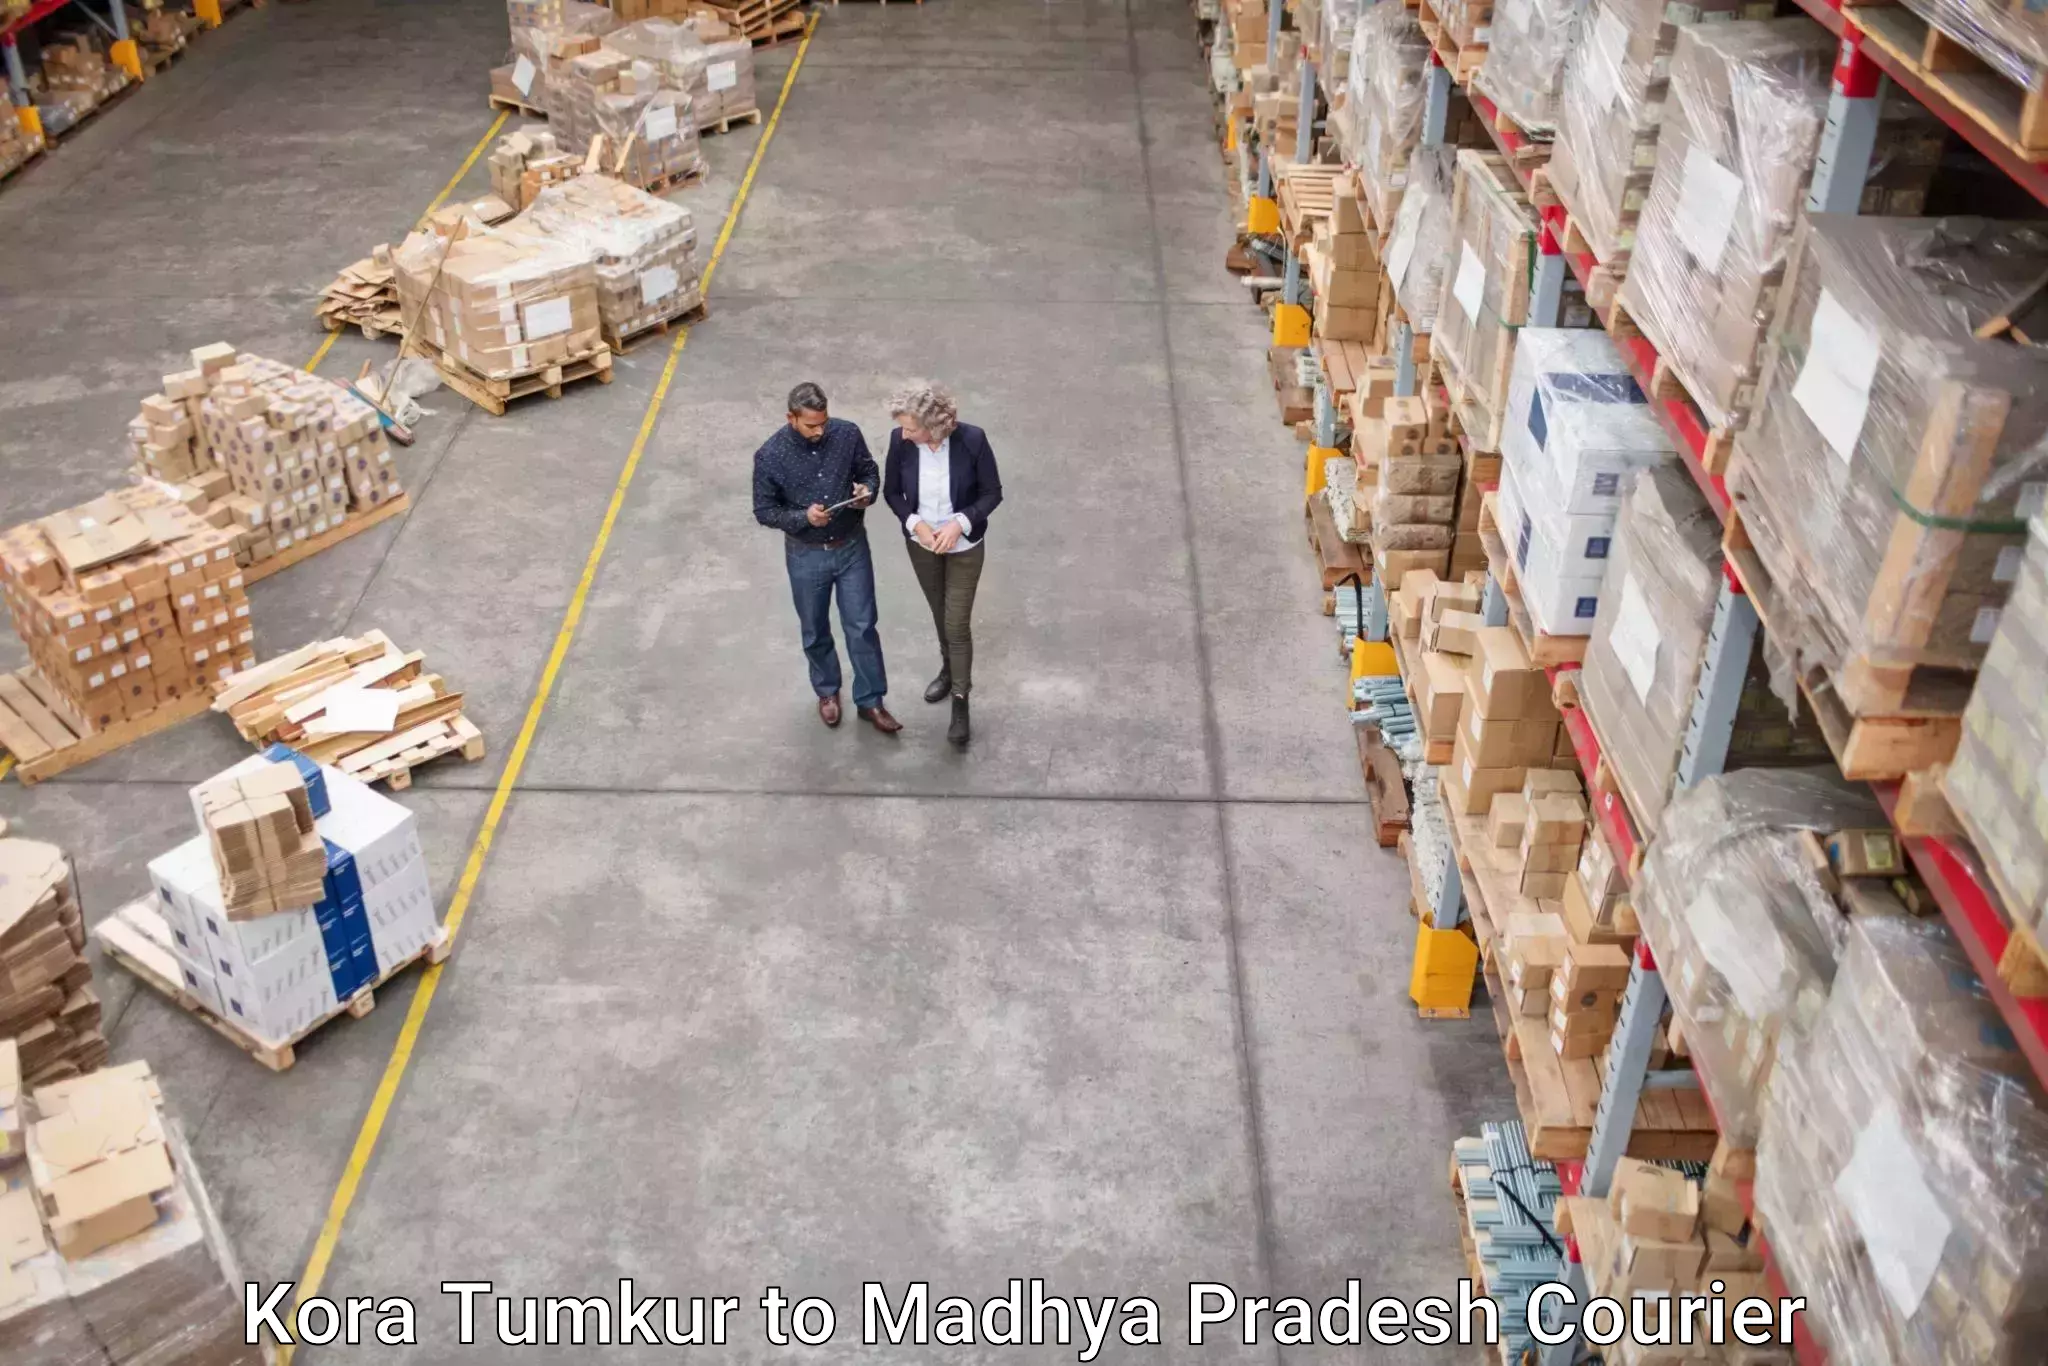 Reliable freight solutions Kora Tumkur to Rampur Naikin